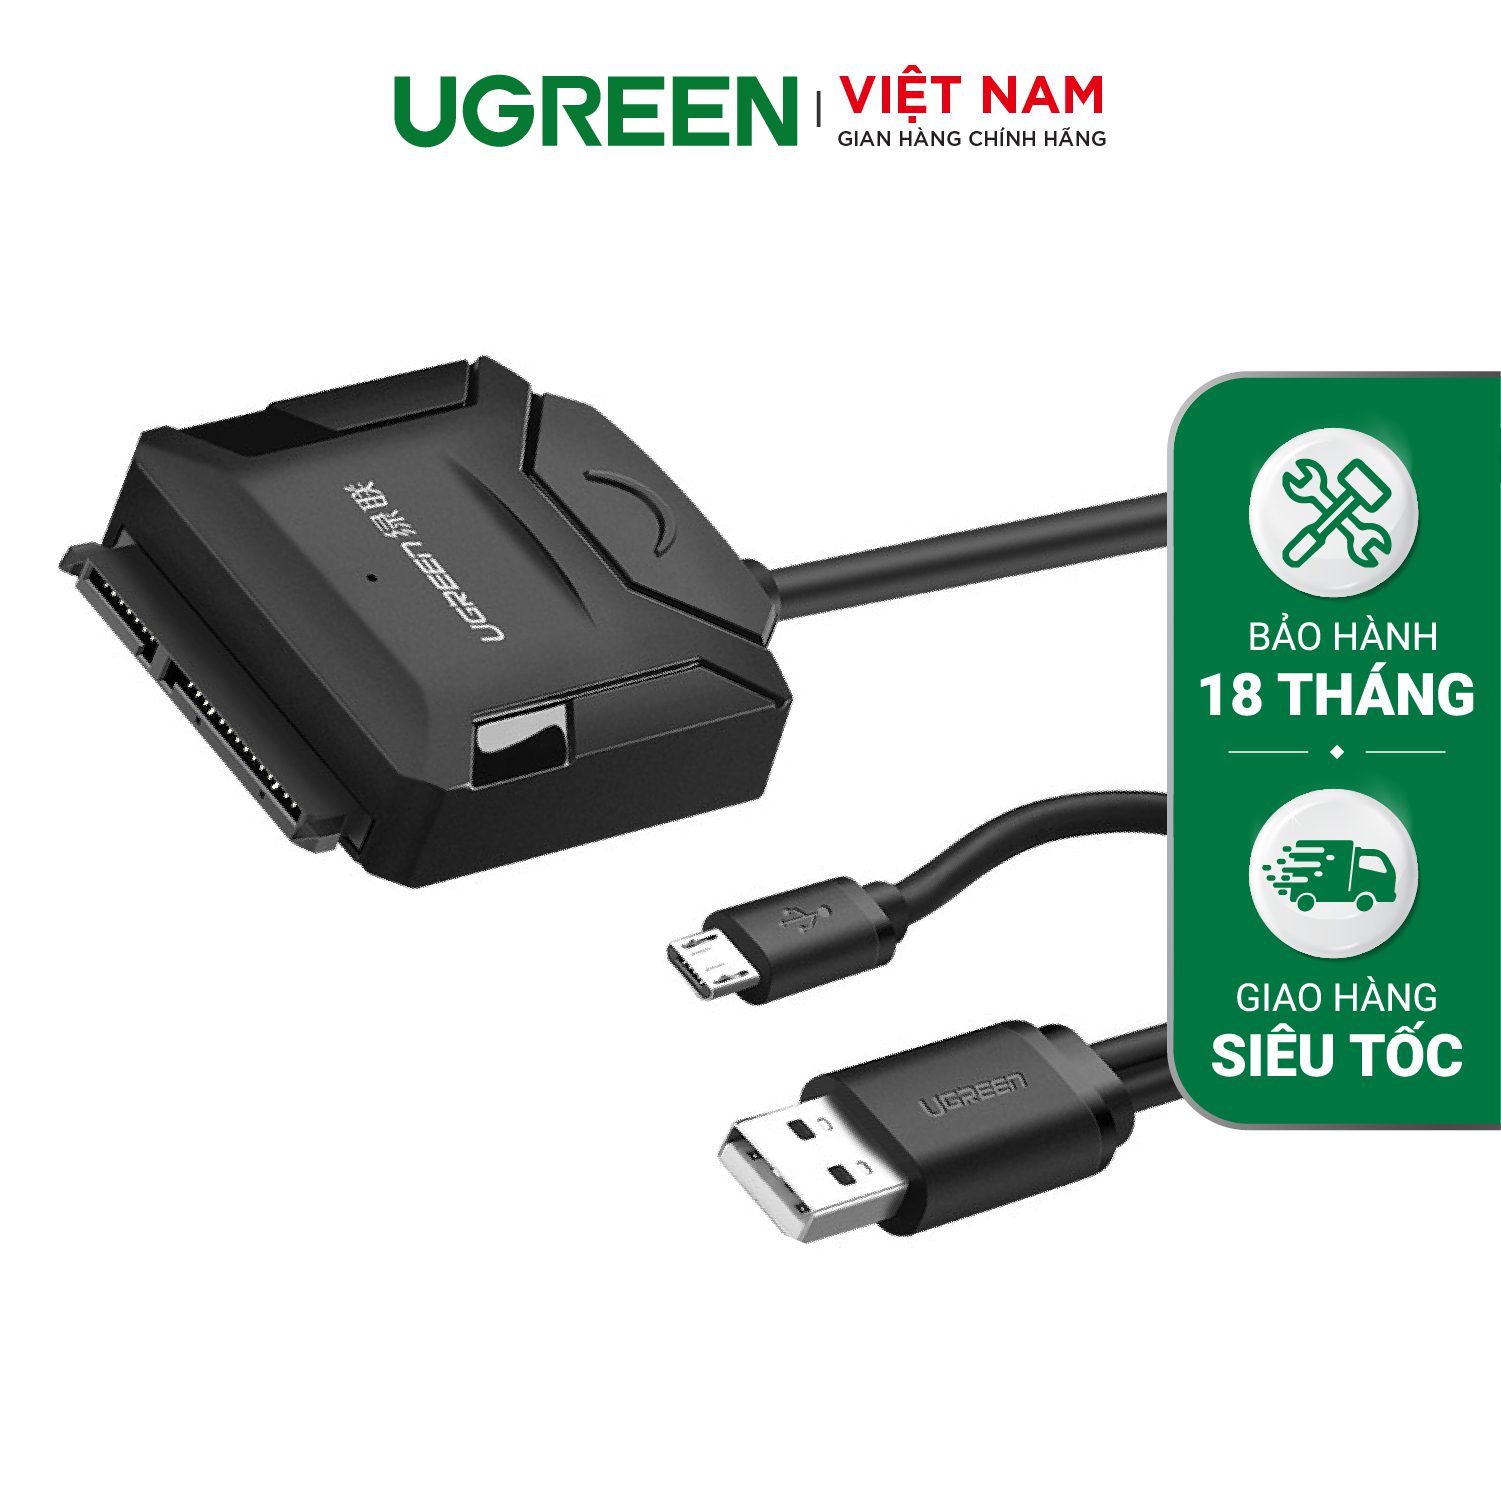 Bộ chuyển đổi USB 2.0 sang Sata 2.0 UGREEN 20216 Tích hợp OTG, 2,5 và 3,5 – Ugreen Việt Nam